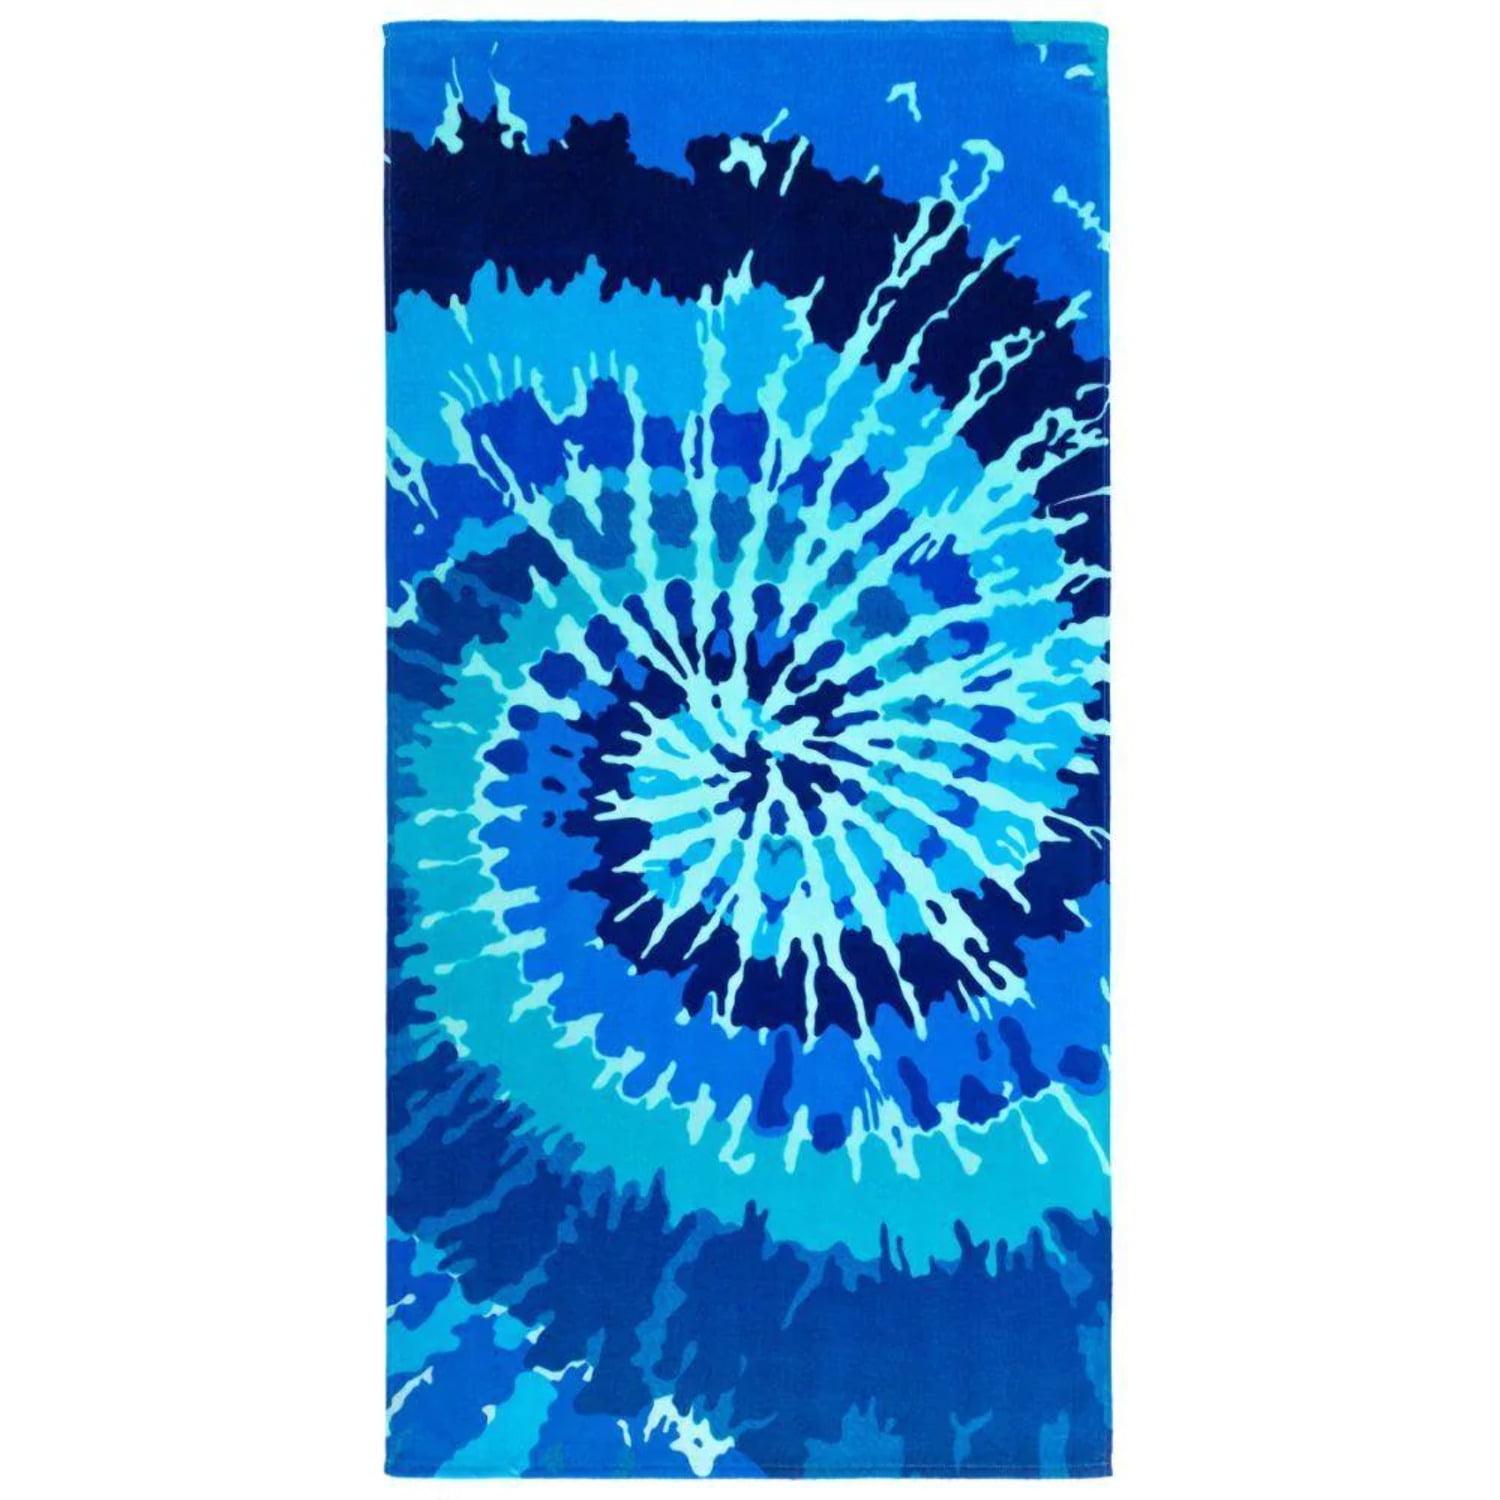 Design "Tie Dye Blue" 63" Round Beach Towel 